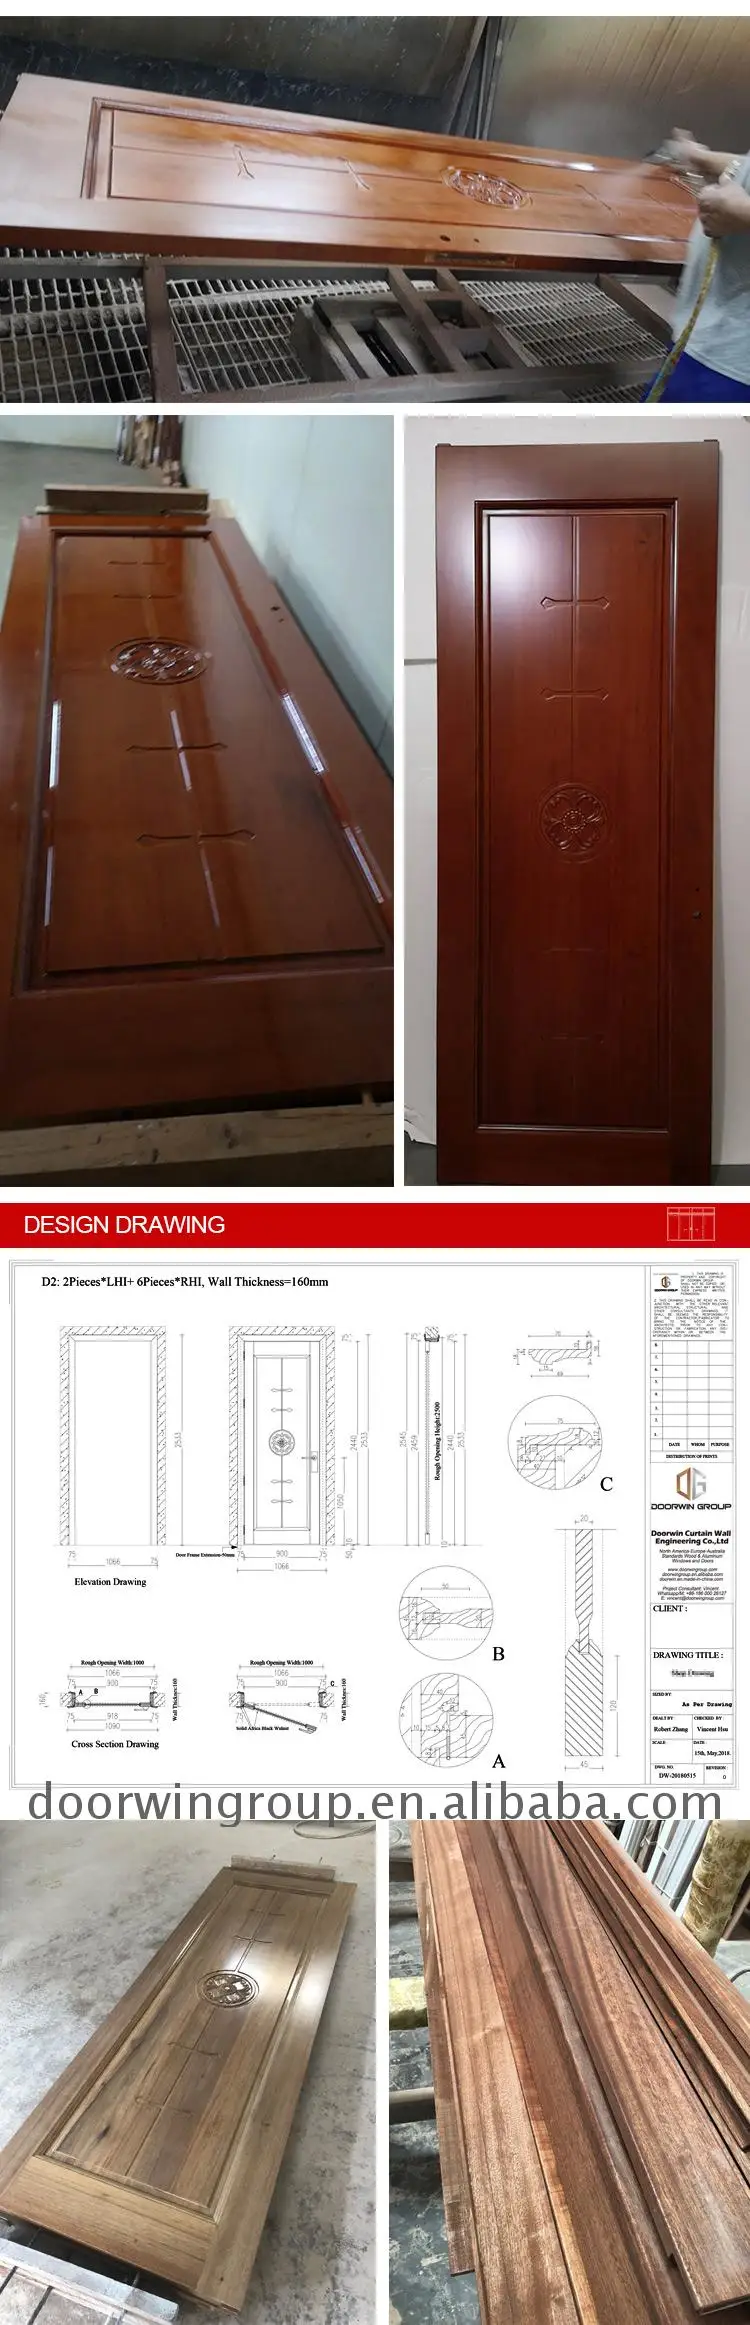 China Hot Sale 2 panel interior doors solid wood luxury wooden villa door wooden door for home